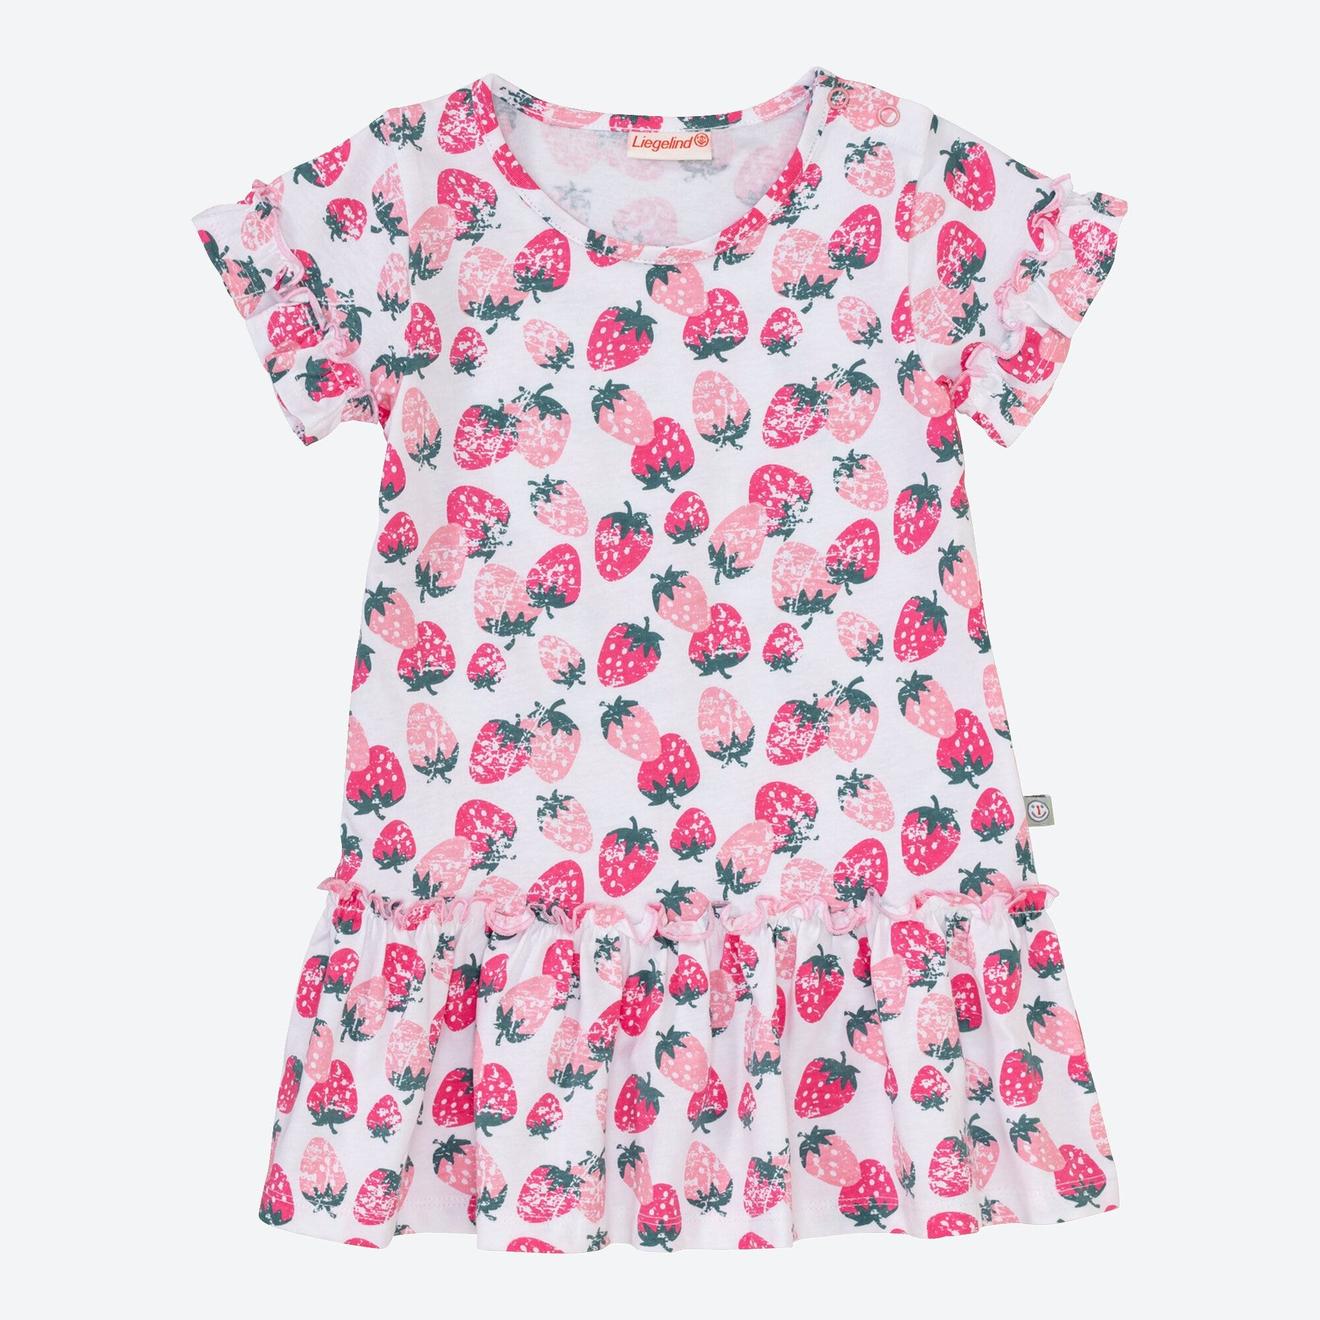 Baby-Mädchen-Kleid mit Erdbeer-Muster für 3,99€ in NKD